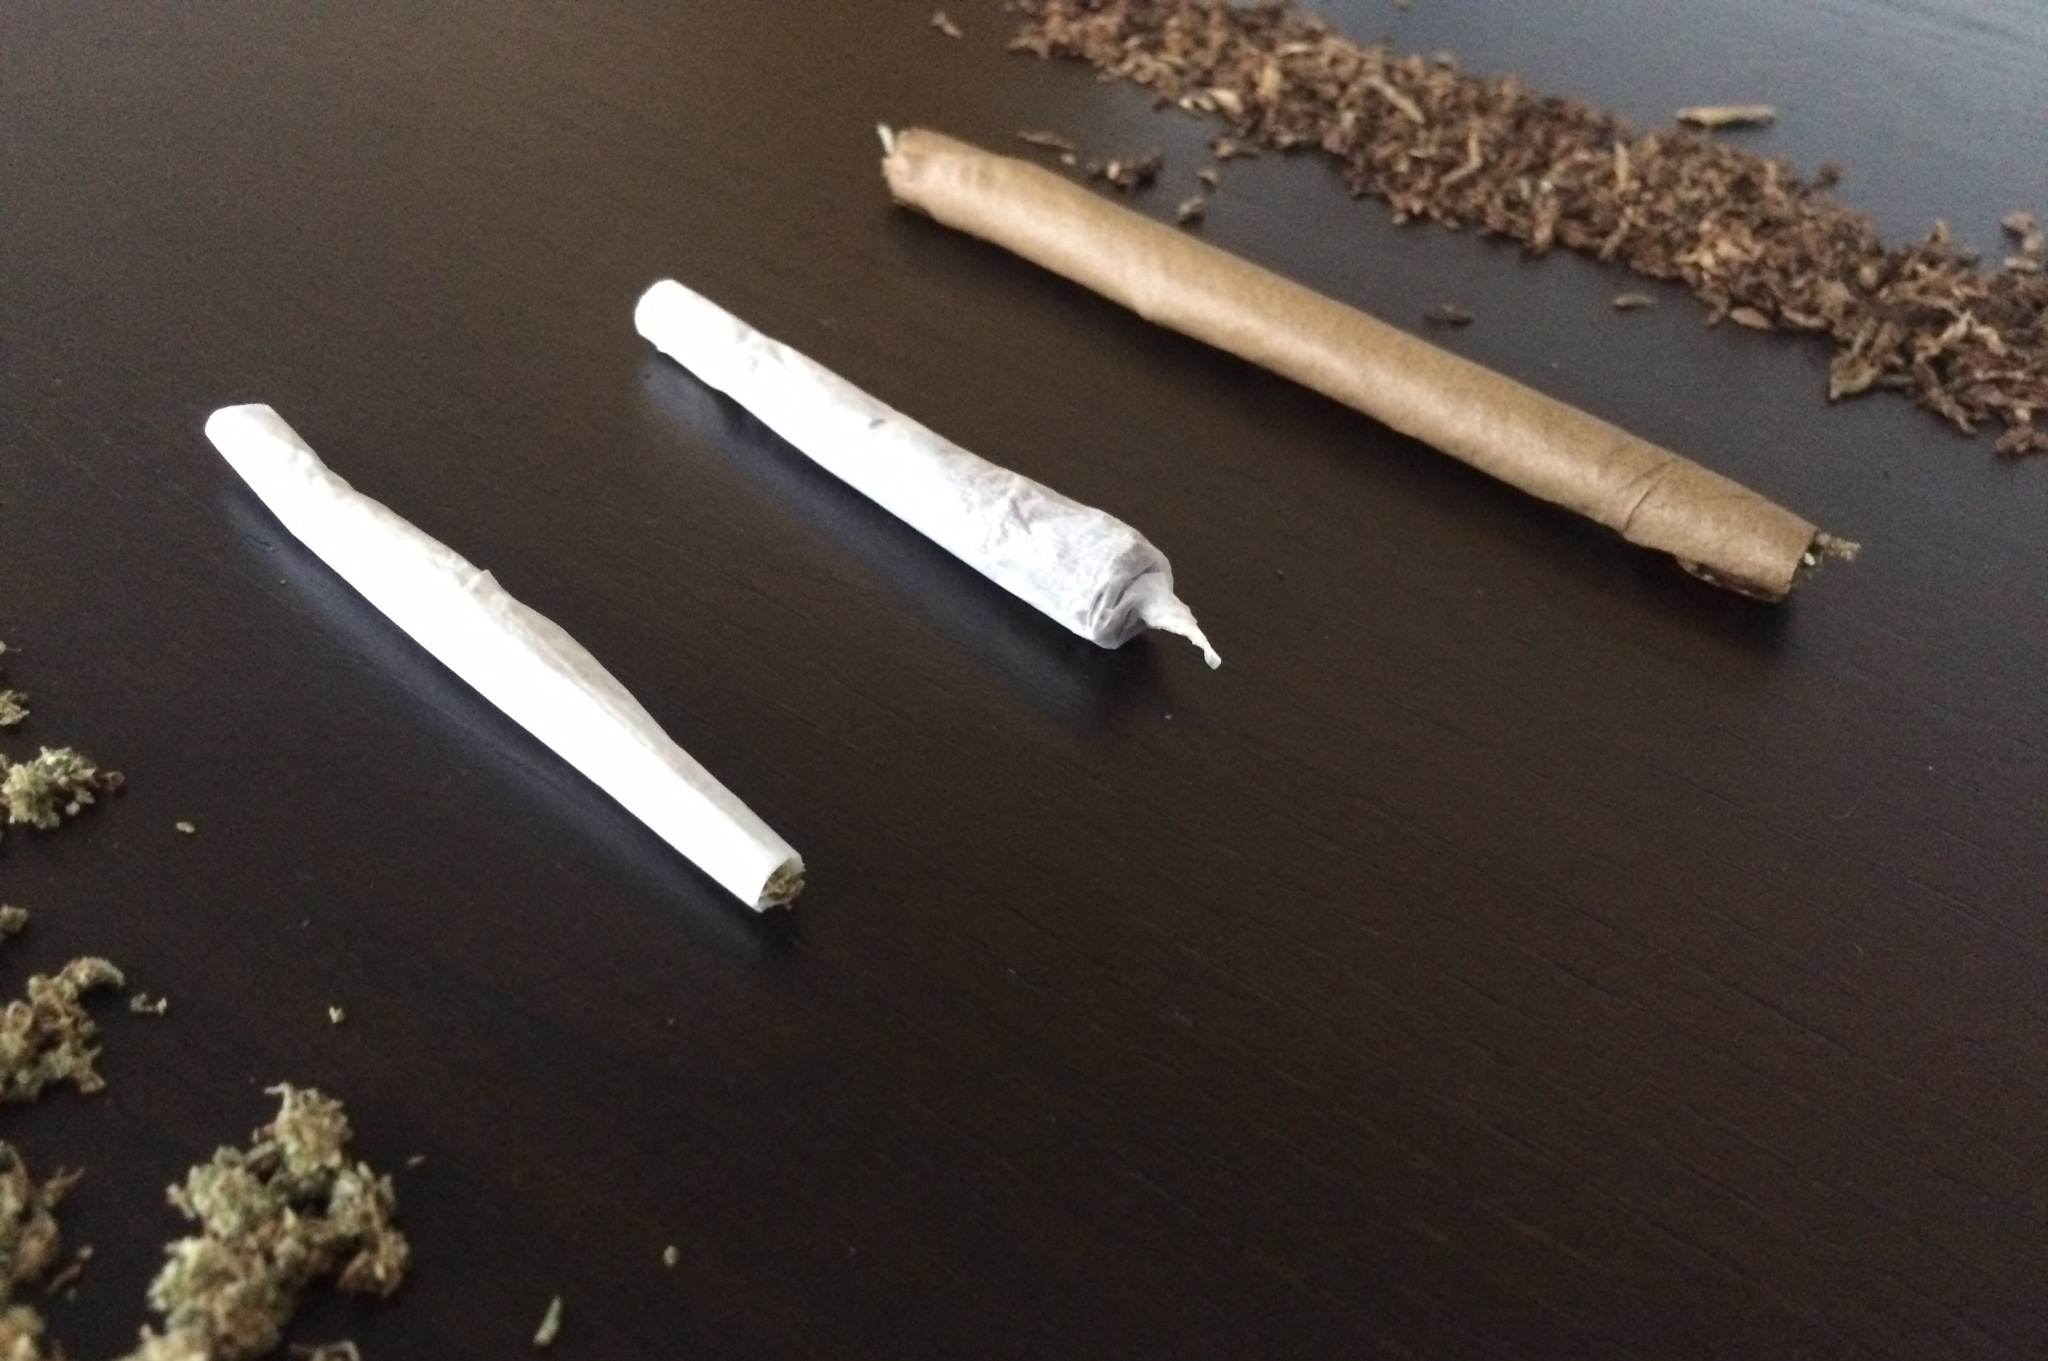 Joints vs Blunts vs Spliffs: Understanding the Differences in Cannabis Smoking Methods